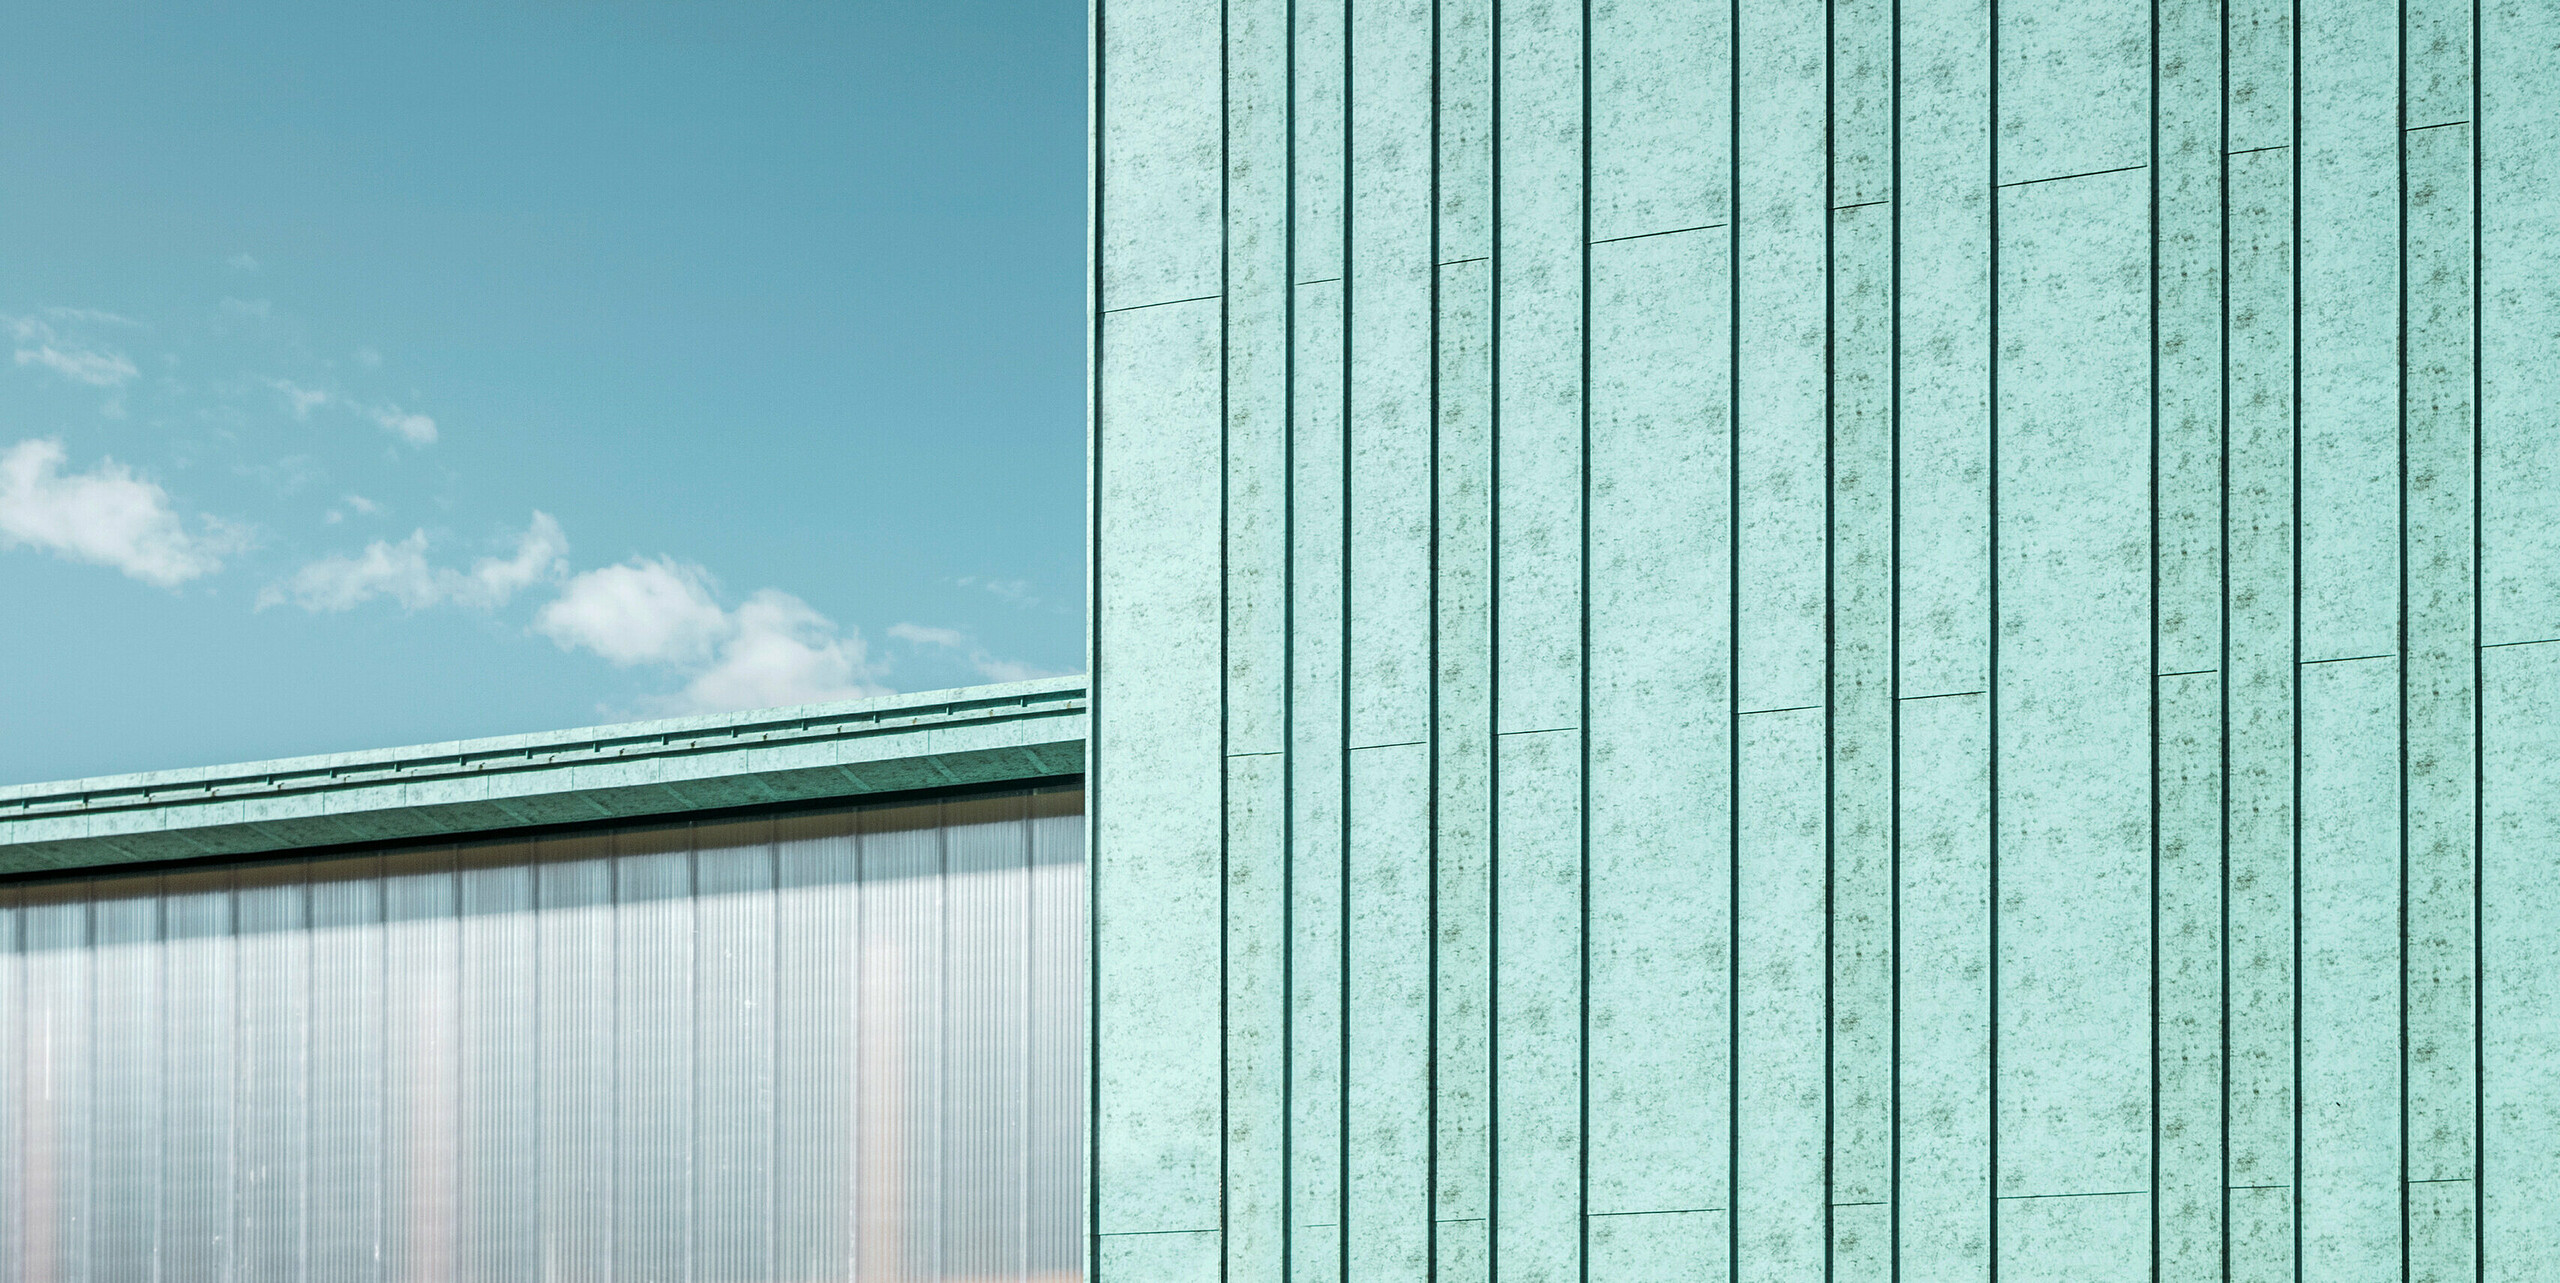 Das Bild zeigt eine moderne PREFA Fassade aus Aluminium in einem einzigartigen patinagrünen Farbton. Die Fassade präsentiert sich in einer vertikalen Stehfalzdeckung, was ihr eine strukturierte Ästhetik verleiht. Die klaren Linien der vertikalen Fassadenelemente bieten einen harmonischen Kontrast zum blauen Himmel und der natürlichen Umgebung im Hintergrund. Bei dem Gebäude handelt es sich um das Zero Magnetic Field Laboratory in Fertöboz (HU). Das Observatorium ist gut in seine Umgebung integriert, wobei die Farbe der Fassade eine ökologische und naturnahe Anmutung hat. Die Fassade wirkt trotz ihrer sichtbaren modernen Beschaffenheit und des industriellen Materials natürlich und fügt sich sanft in die Landschaft ein.